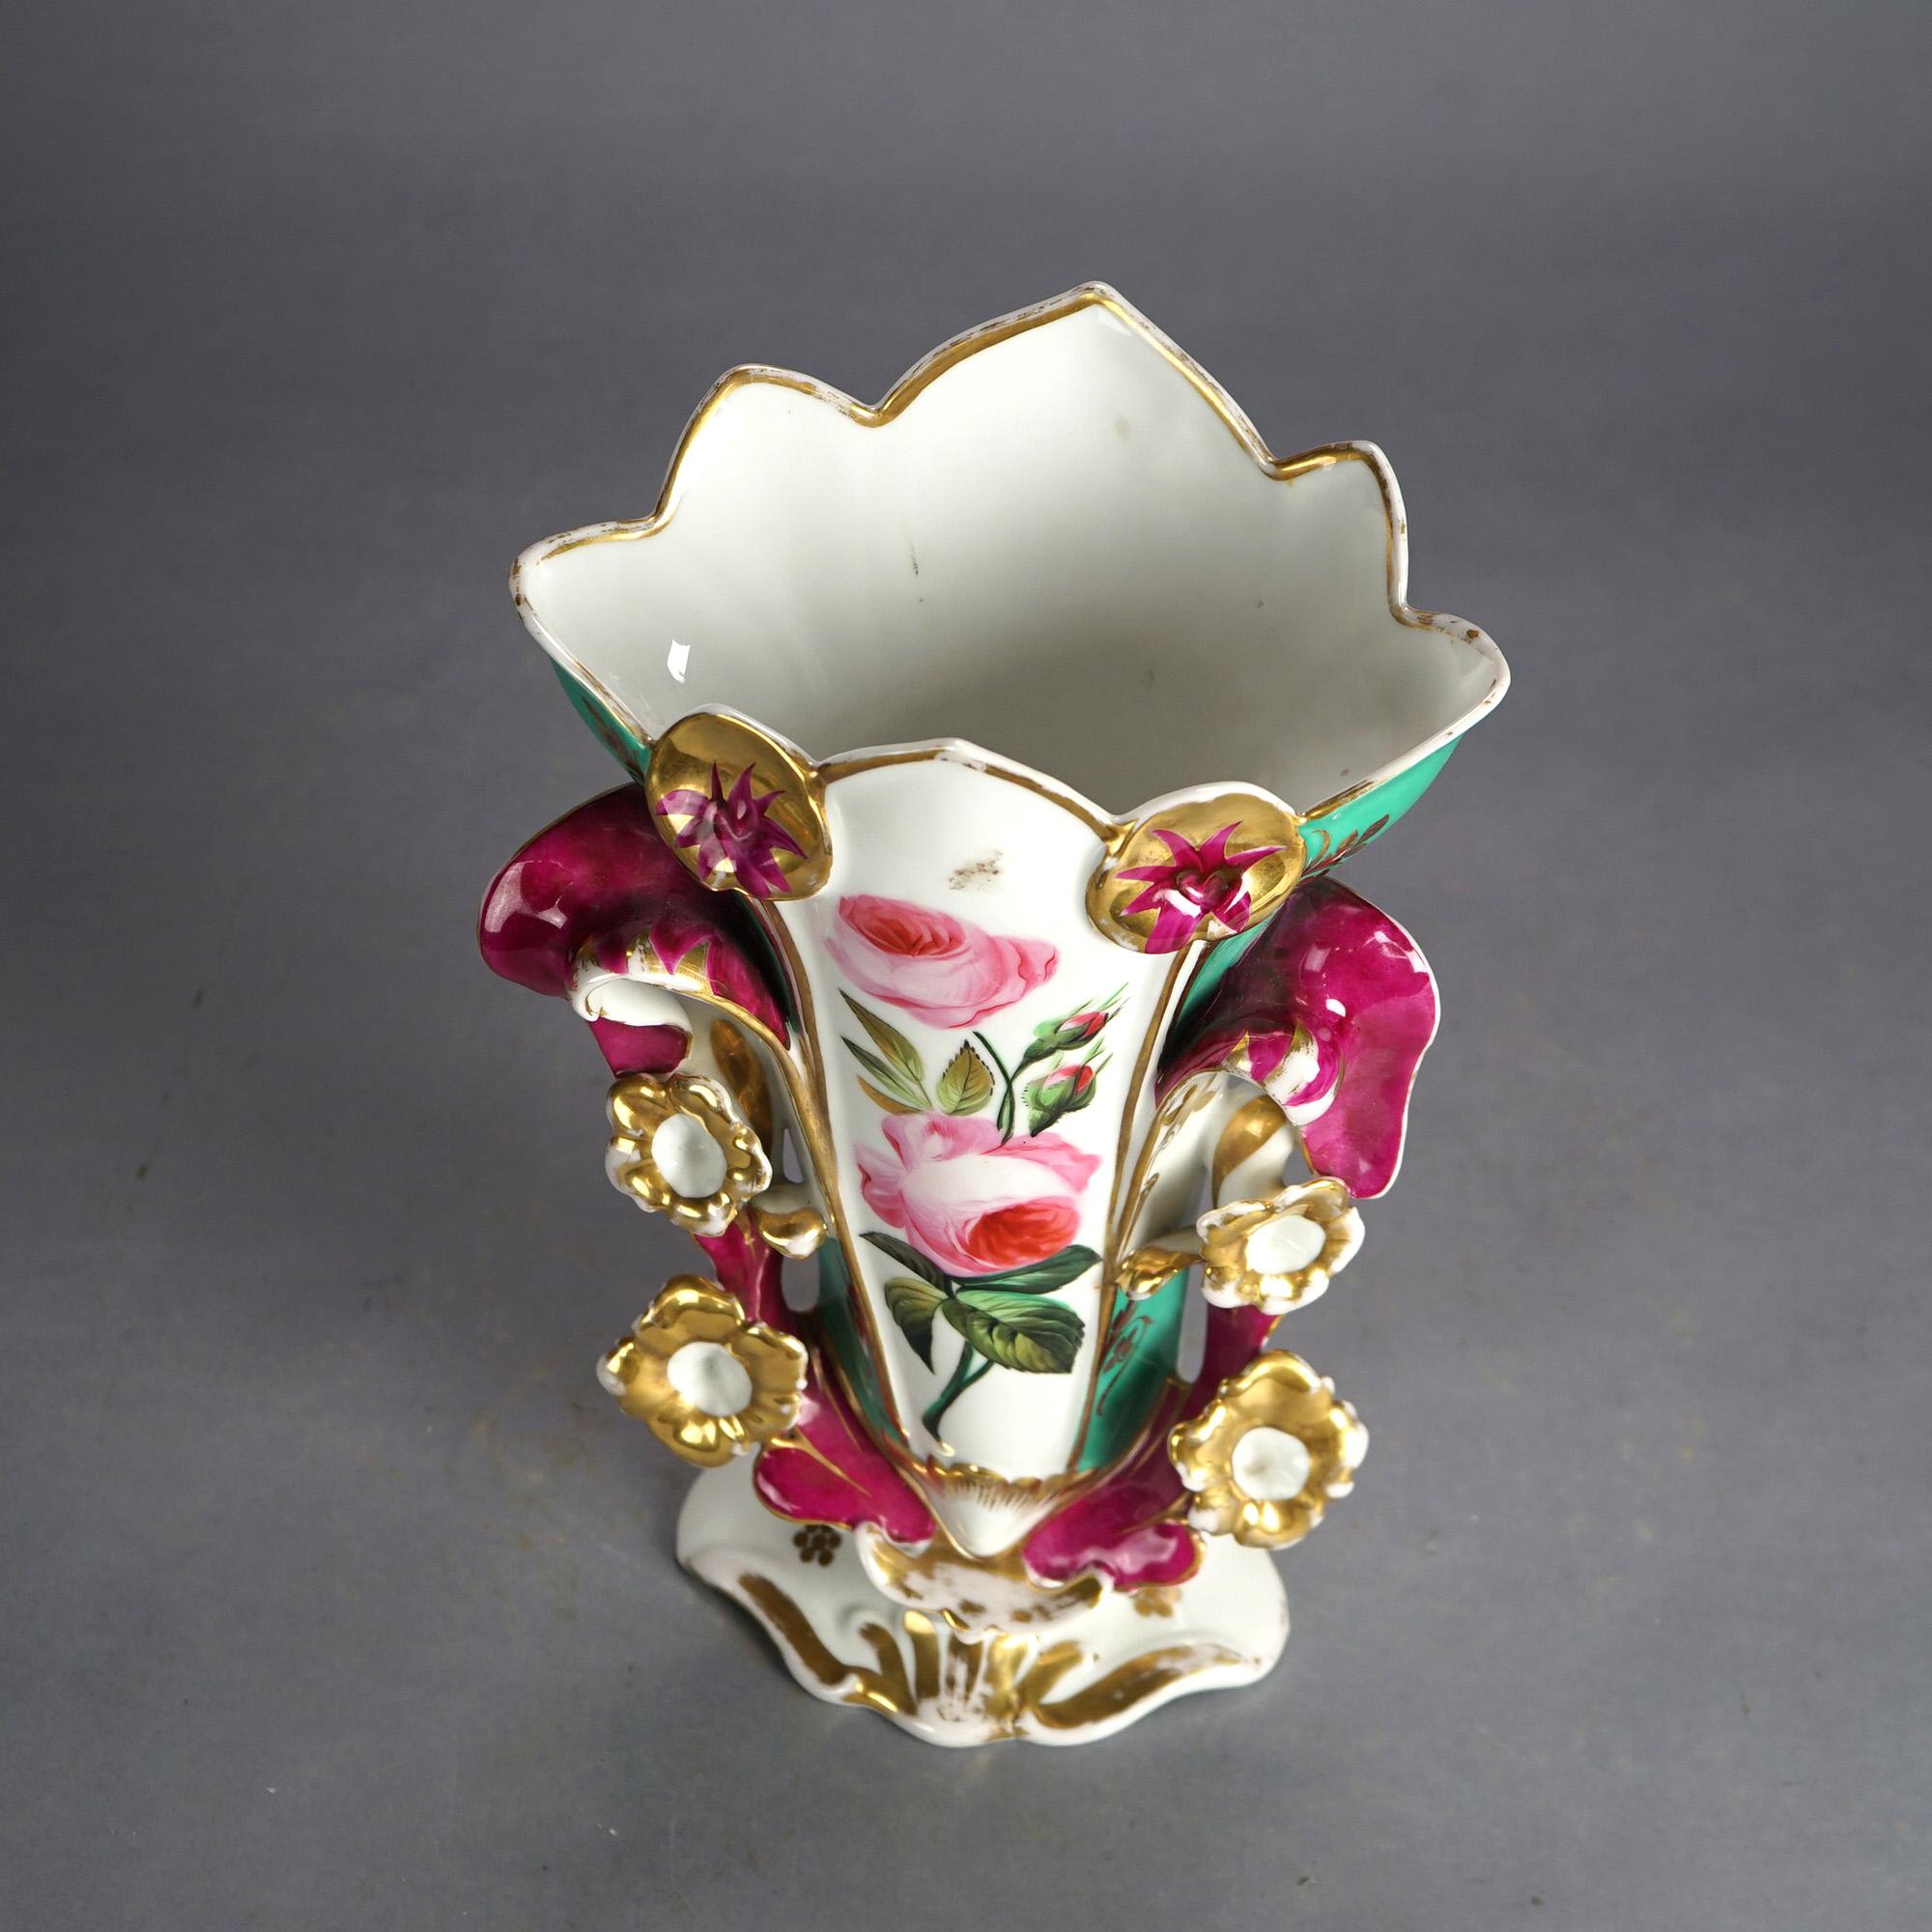 Antike Französisch Old Paris Porzellan Hand gemalt & vergoldet Spill Vase mit Rosen C1880

Maße: 14,75''H x 9''B x 6,75''D